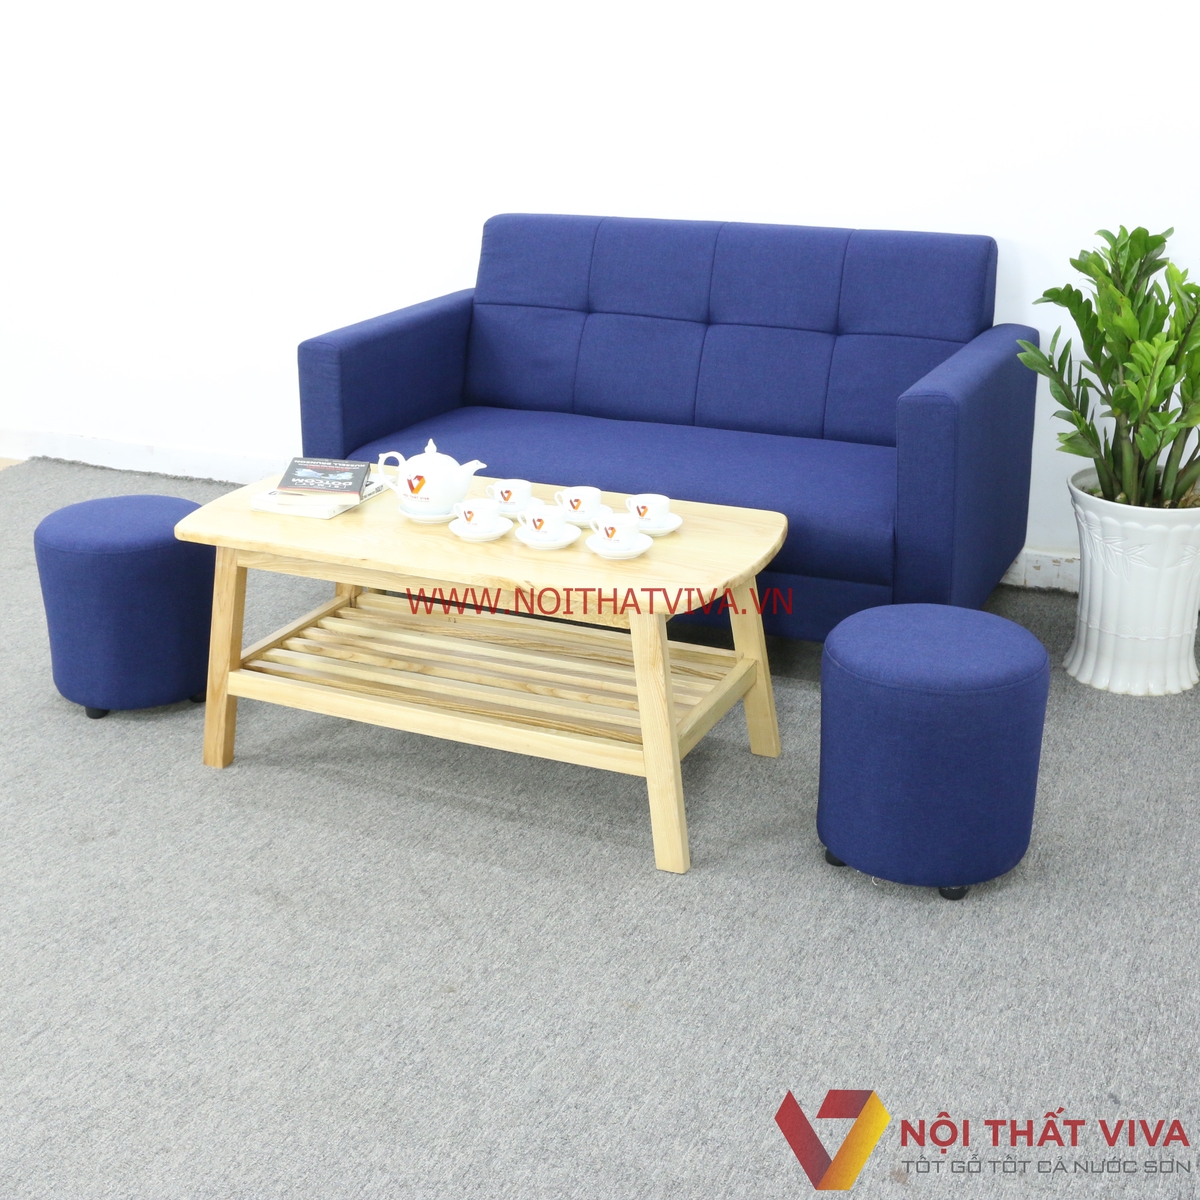 Ghế sofa nhỏ: Với mẫu ghế sofa nhỏ của chúng tôi, bạn sẽ có thêm không gian tiện nghi và thoải mái cho căn phòng yêu thích của mình. Được thiết kế tinh tế và chất liệu cao cấp, ghế sofa nhỏ sẽ là sự lựa chọn hoàn hảo giúp tạo nên không gian tràn đầy cảm xúc và phong cách.